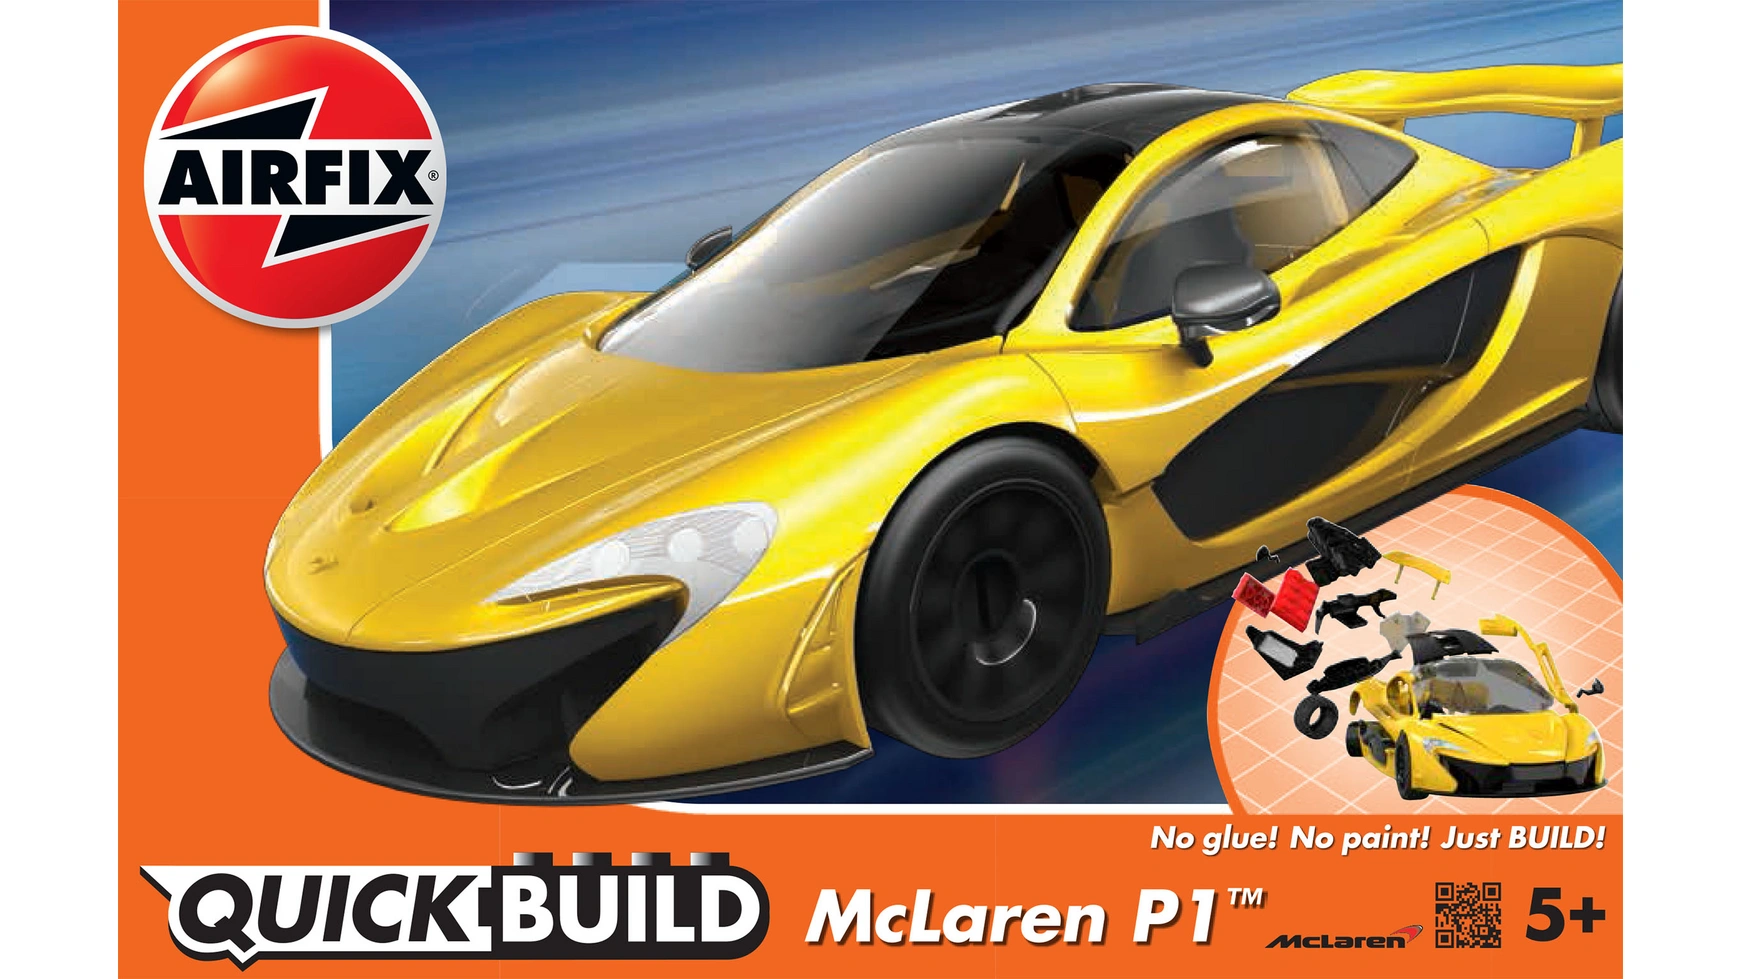 Airfix McLaren P1 Quickbuild